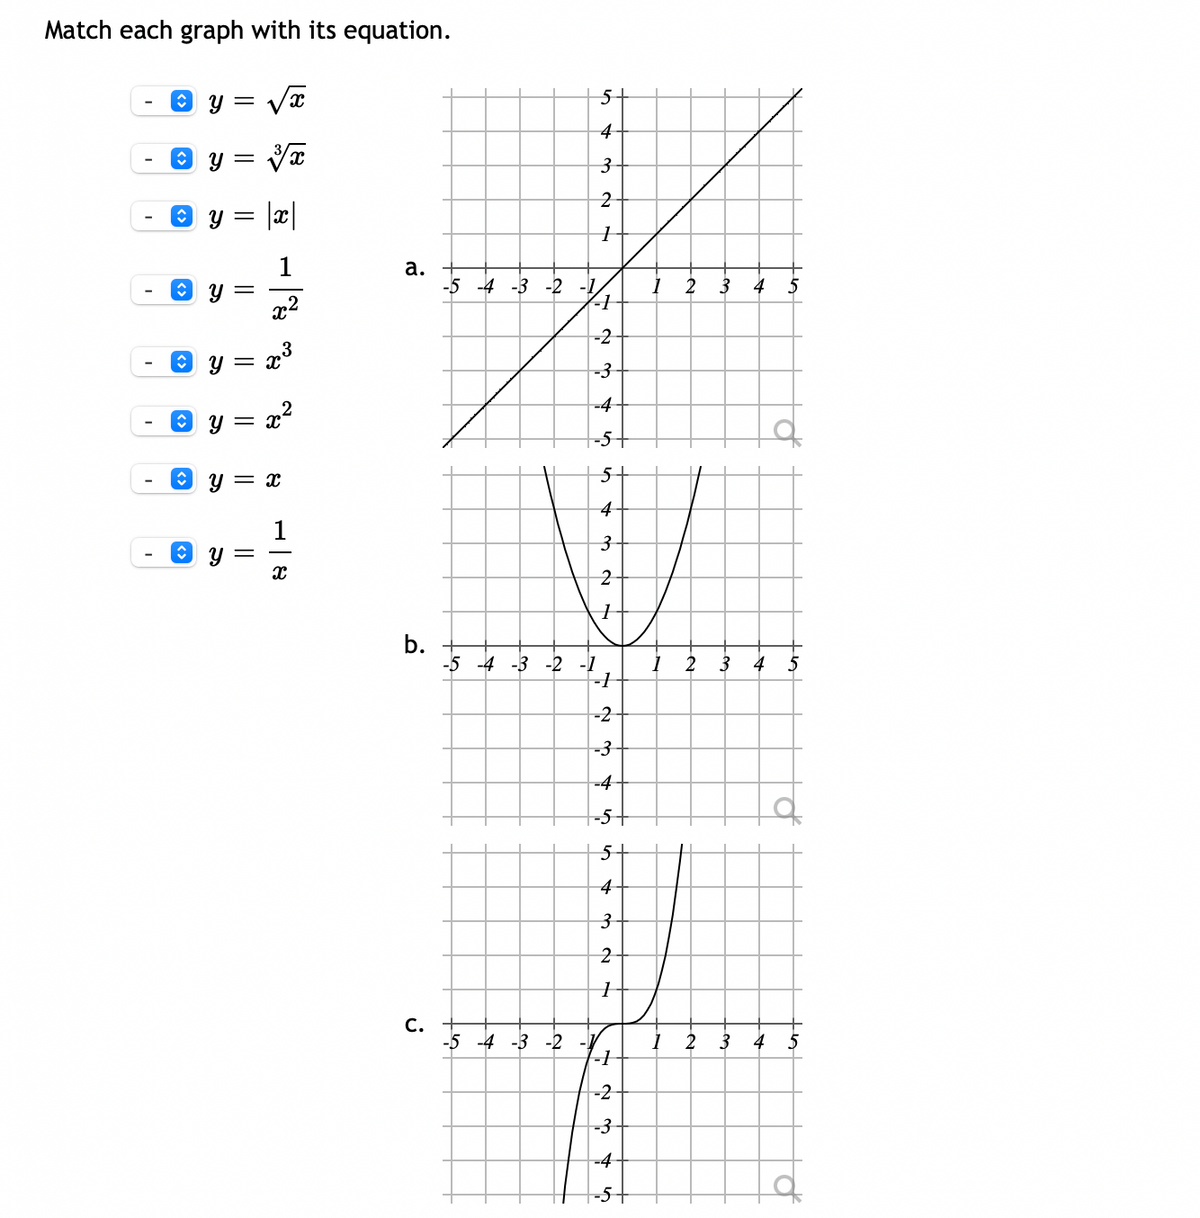 Match each graph with its equation.
O y =
4
Y =
1
а.
-5 -4 -3 -2 -1
2
3
4
5
x2
-2
-3
-4
O y = x²
-5-
y = x
5-
4
3.
b.
-5 -4 -3 -2 -1
2
3 4
-2
-3
-4
-5
4-
С.
-5 -4 -3 -2
2
3
4
5
-2
-3
-4
of
||
